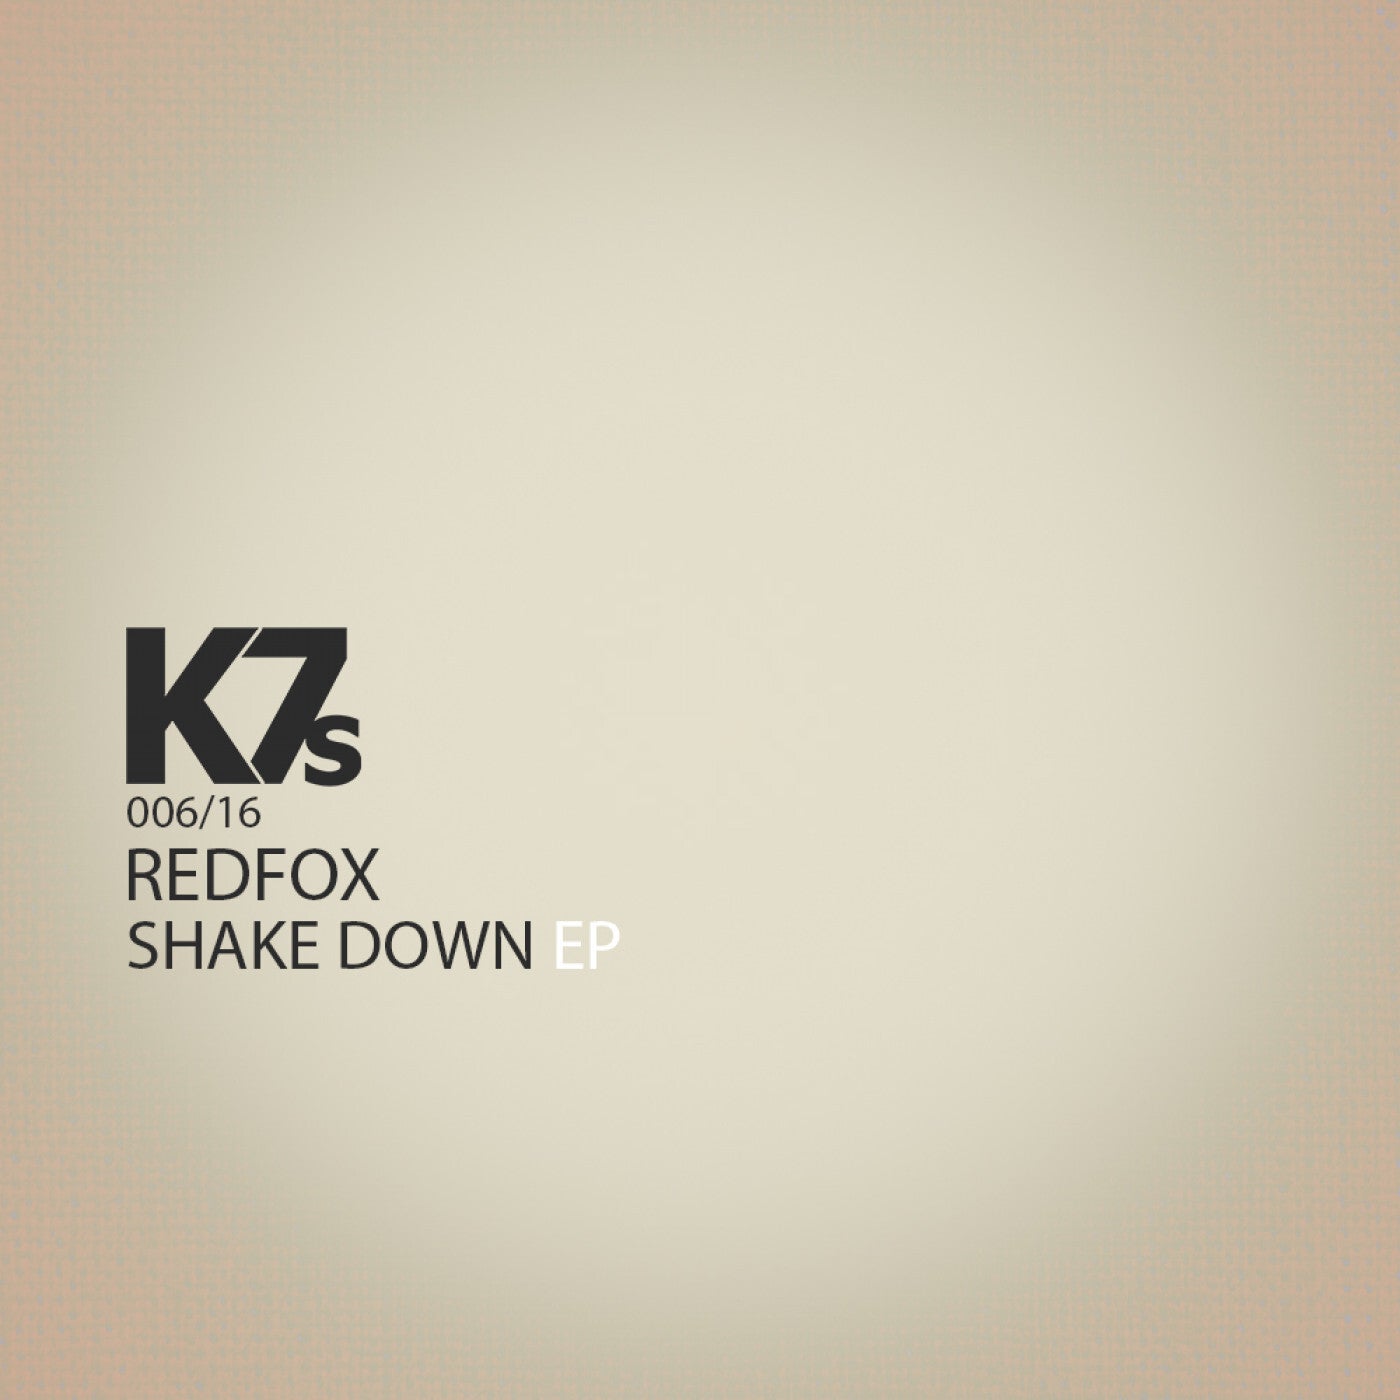 K7S artists & music download - Beatport